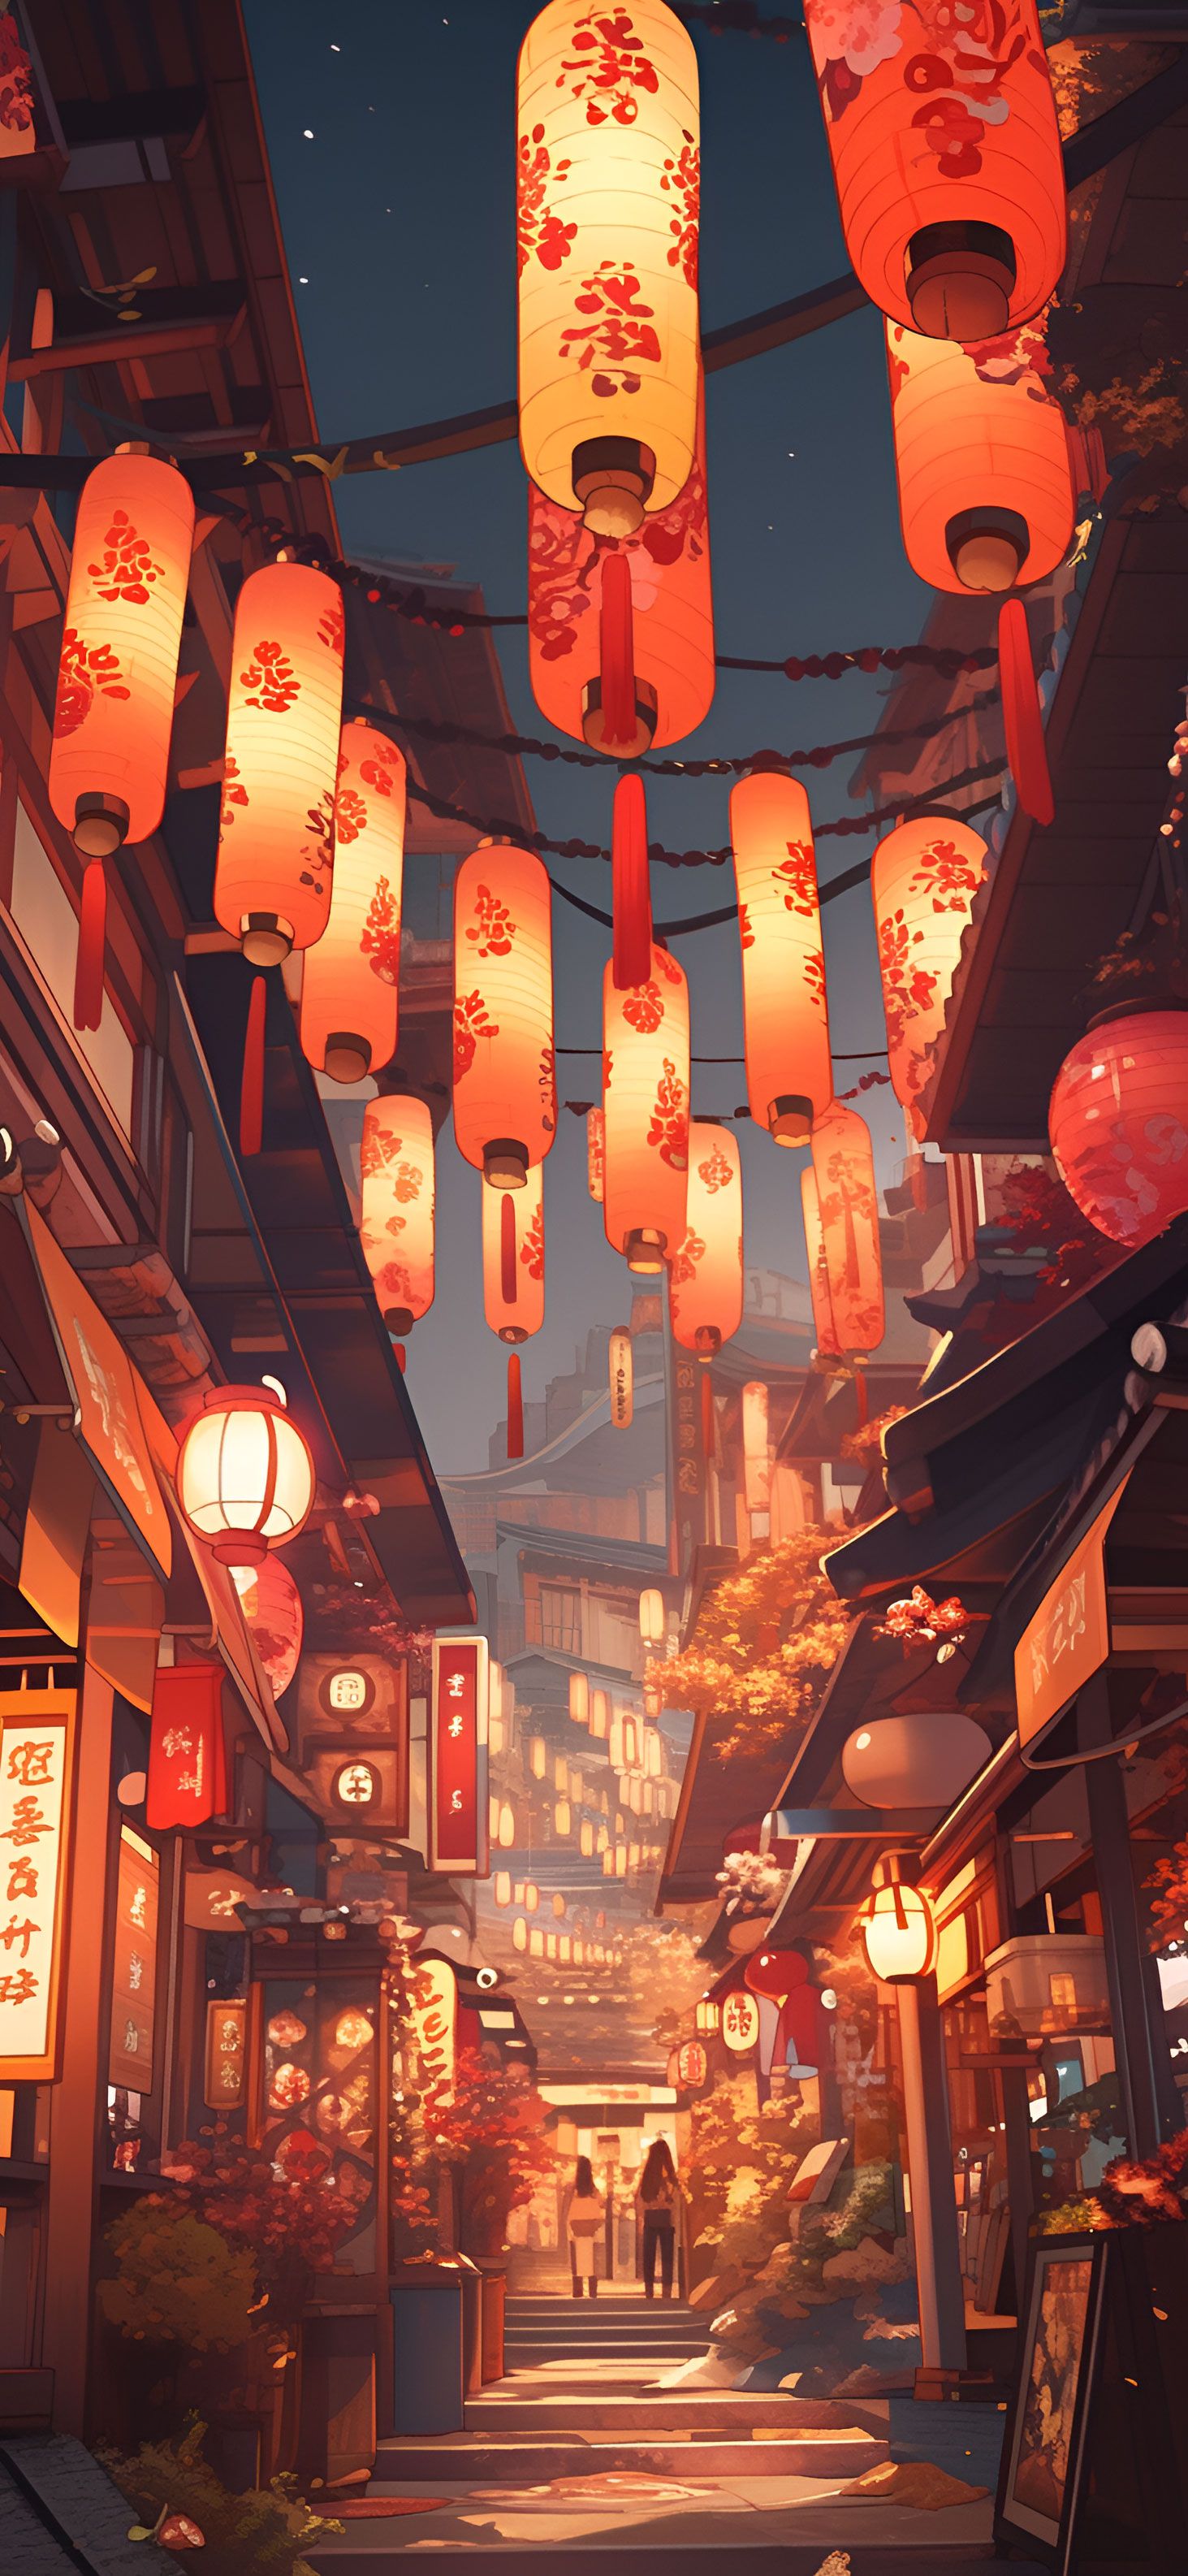 IPhone wallpaper anime street lanterns red night art. - Japan